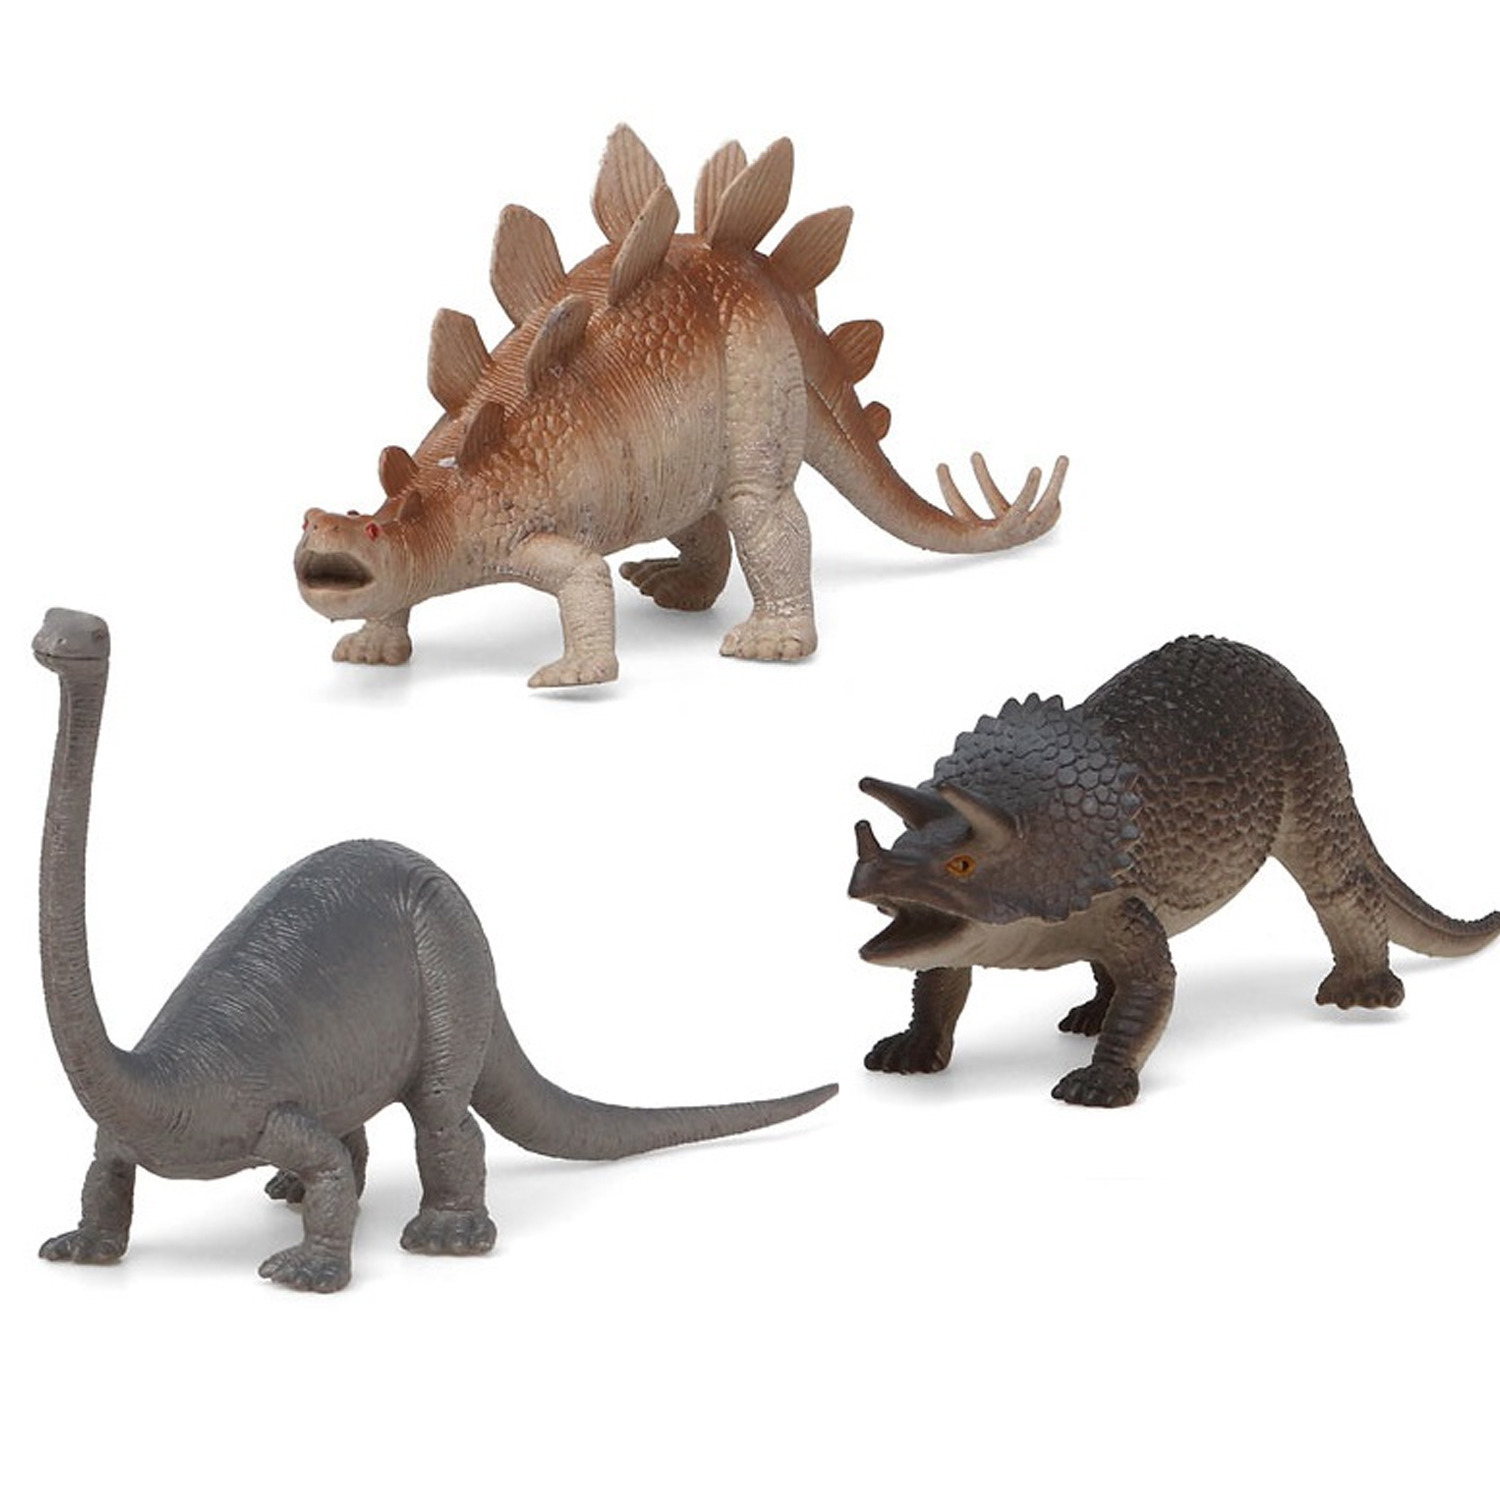 Afbeelding 3x Plastic dino speelgoed figuren voor kinderen door Animals Giftshop